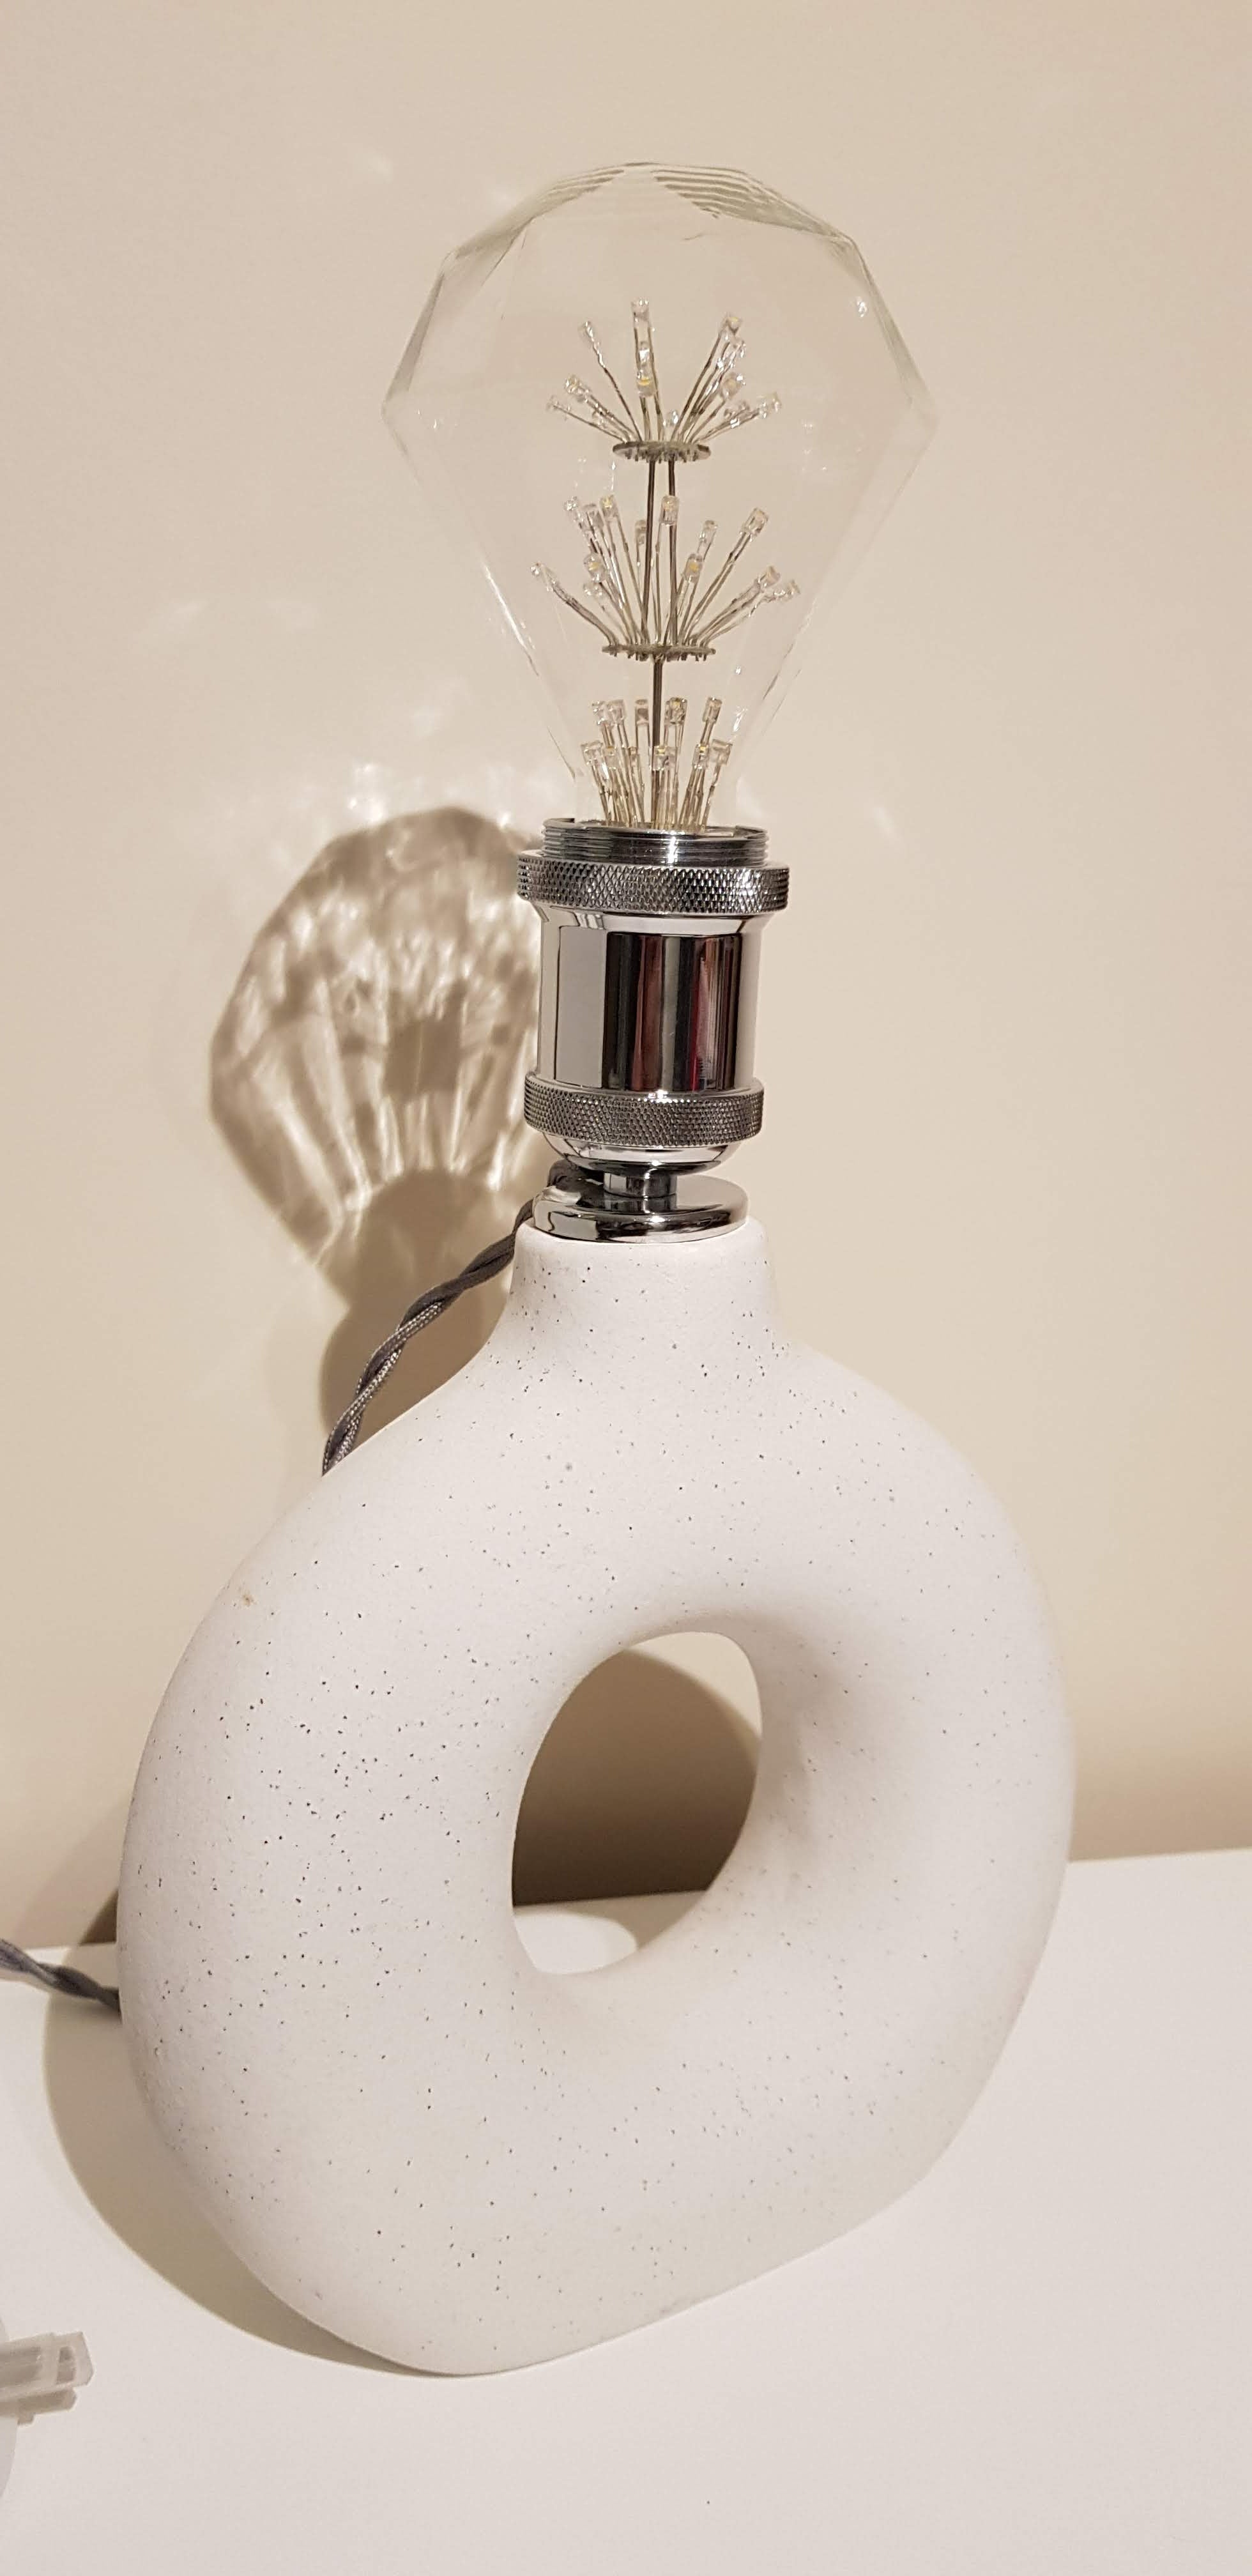 Royal Designs DIY Lamp Making Kit – Make, Refurbish, and Repair